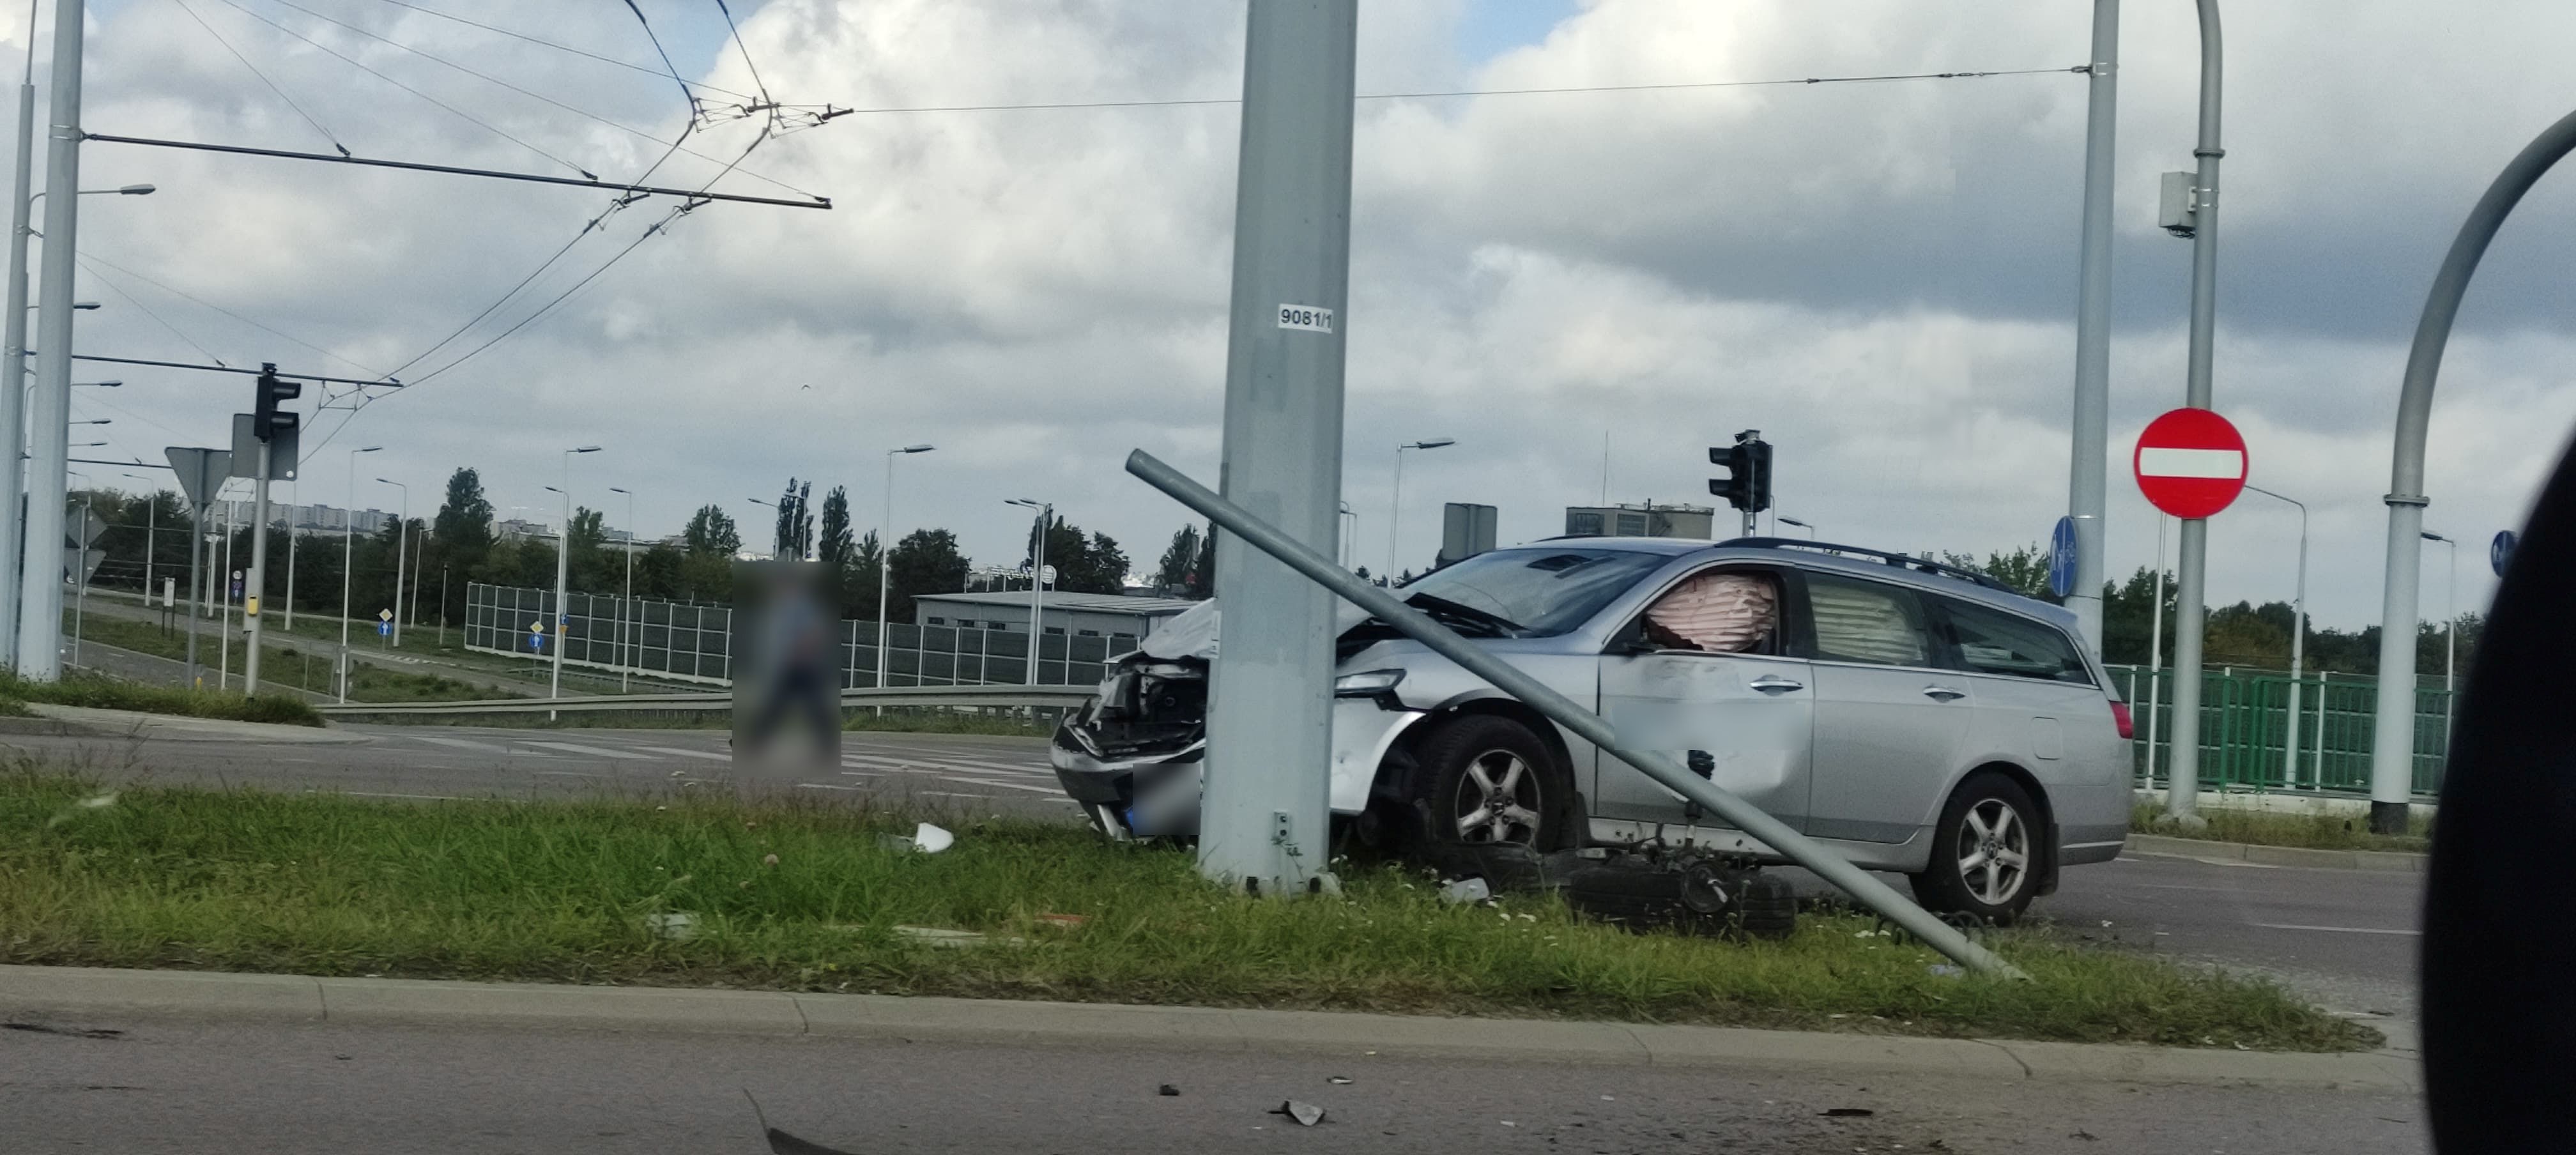 Dacia zderzyła się z hondą, obaj kierowcy zapewniali, że mieli zielone. Monitoring pokazał prawdę (zdjęcia)